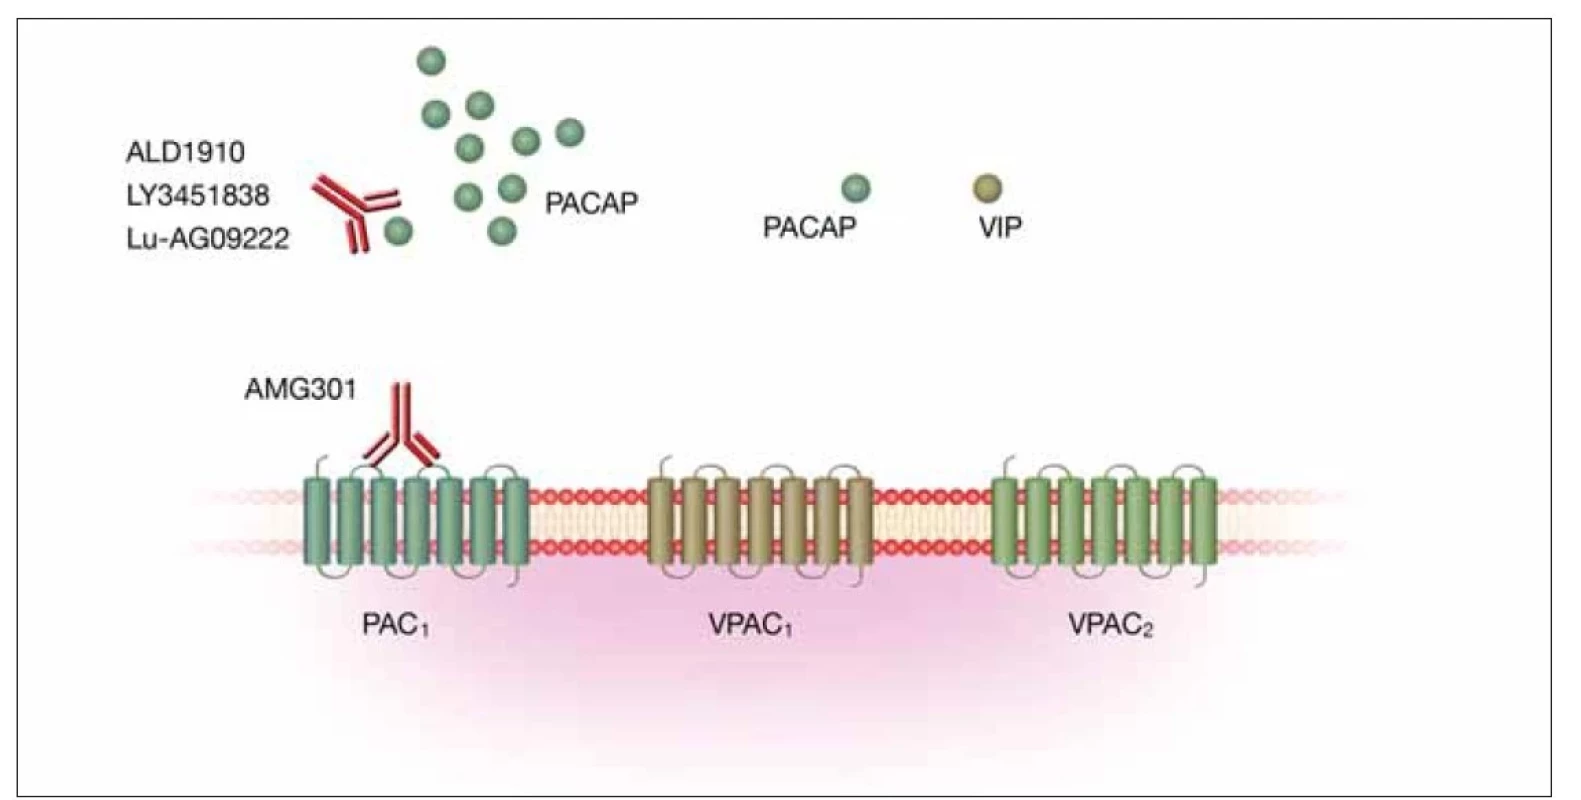 Schematické znázornění afi nity PACAP k trojici svých receptorů a blokáda jeho vazby pomocí monoklonálních protilátek.
Zatímco afi nita PACAP i VIP k receptorům VPAC1 a VPAC2 je zhruba srovnatelná, k PAC1 receptoru má PACAP přinejmenším 1 000× vyšší
aktivitu než VIP. Vyznačena je vazba monoklonální protilátky namířené proti PAC1 receptoru (AMG301) a monoklonálních protilátek
namířených proti PACAP (ALD1910, LY3451838, Lu-AG09222).<br>
PAC1 – pituitary adenylate cyclase activating polypeptide type 1 receptor; PACAP – pituitární adenylátcyklázu aktivující polypeptid;
VIP – vazoaktivní intestinální peptid; VPAC1 – vasoactive intestinal polypeptide receptor 1; VPAC2 – vasoactive intestinal polypeptide receptor 2<br>
Fig. 2. Schematic representation of the affinity of PACAP for its three receptors and blockade of its binding with monoclonal antibodies.
While the affi nity of both PACAP and VIP for VPAC1 and VPAC2 receptors is nearly comparable, PACAP has at least 1000-fold higher
activity than VIP for the PAC1 receptor. Binding of monoclonal antibody directed against PAC1 receptor (AMG301) and monoclonal antibodies
directed against PACAP (ALD1910, LY3451838, Lu-AG09222) is shown.<br>
PAC1 – pituitary adenylate cyclase activating polypeptide type 1 receptor; PACAP – pituitary adenylate cyclase activating polypeptide;
VIP – vasoactive intestinal peptide; VPAC1 – vasoactive intestinal polypeptide receptor 1; VPAC2 – vasoactive intestinal polypeptide receptor 2